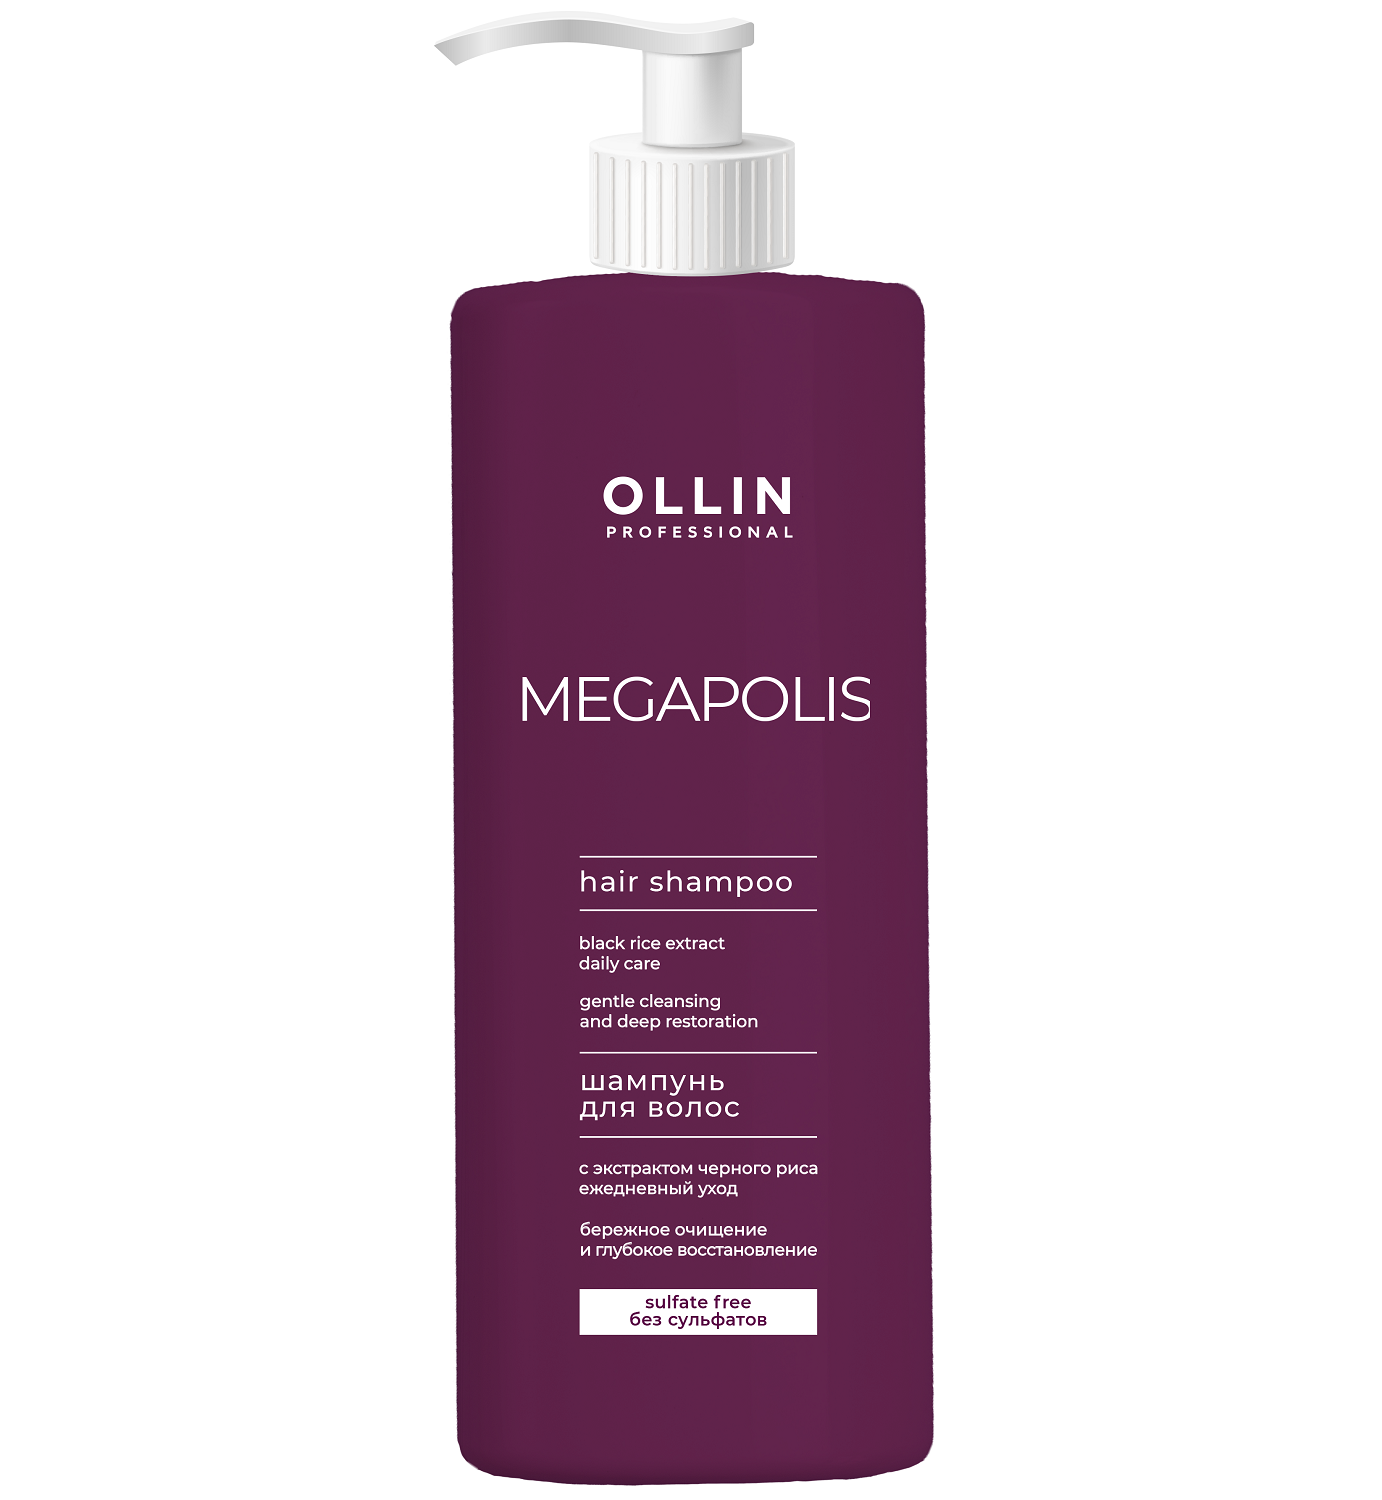 Ollin Professional Бессульфатный шампунь с экстрактом черного риса, 1000 мл (Ollin Professional, Megapolis) цена и фото